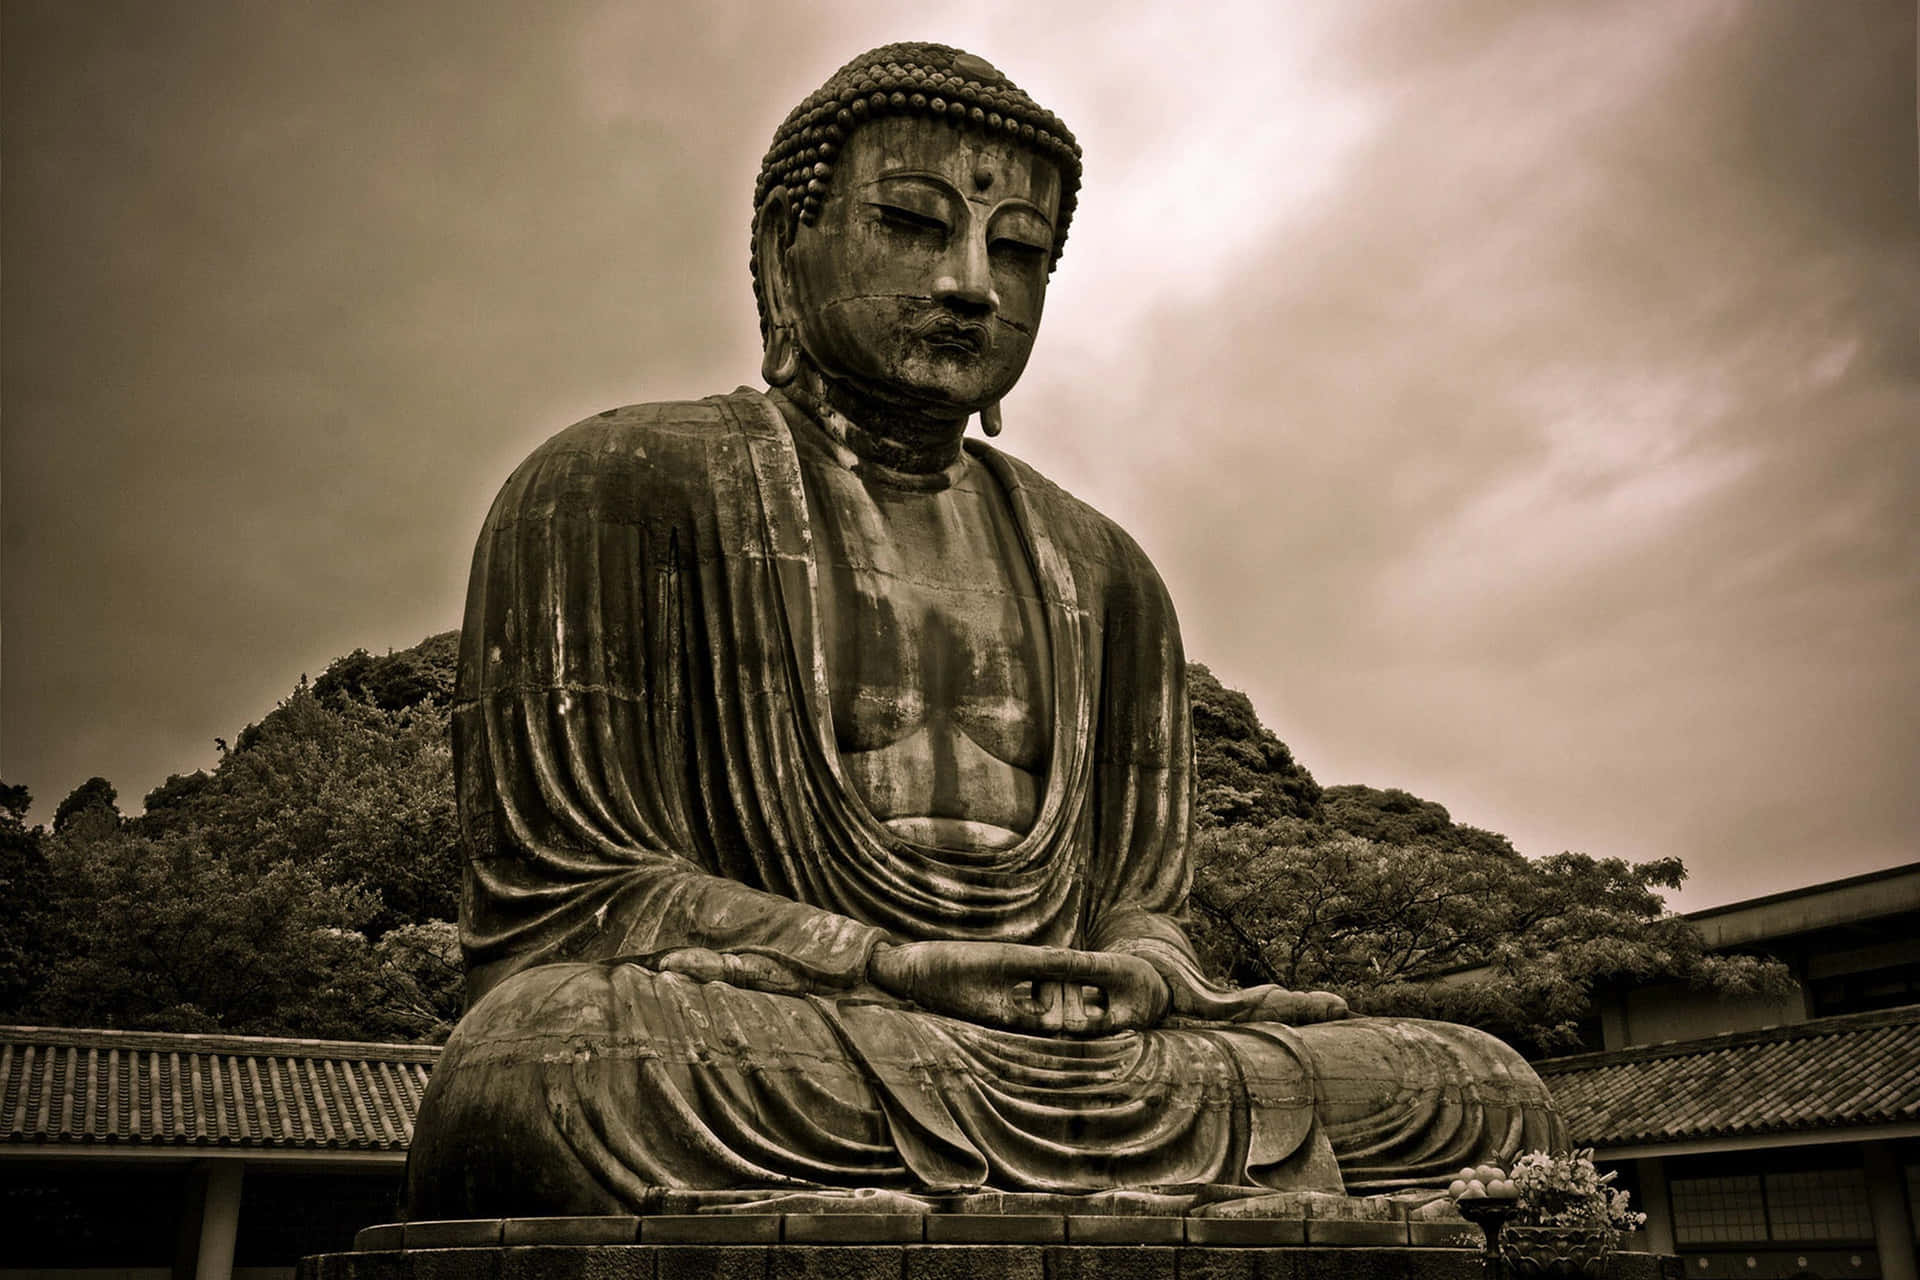 Gautama Buddha sitting in meditation